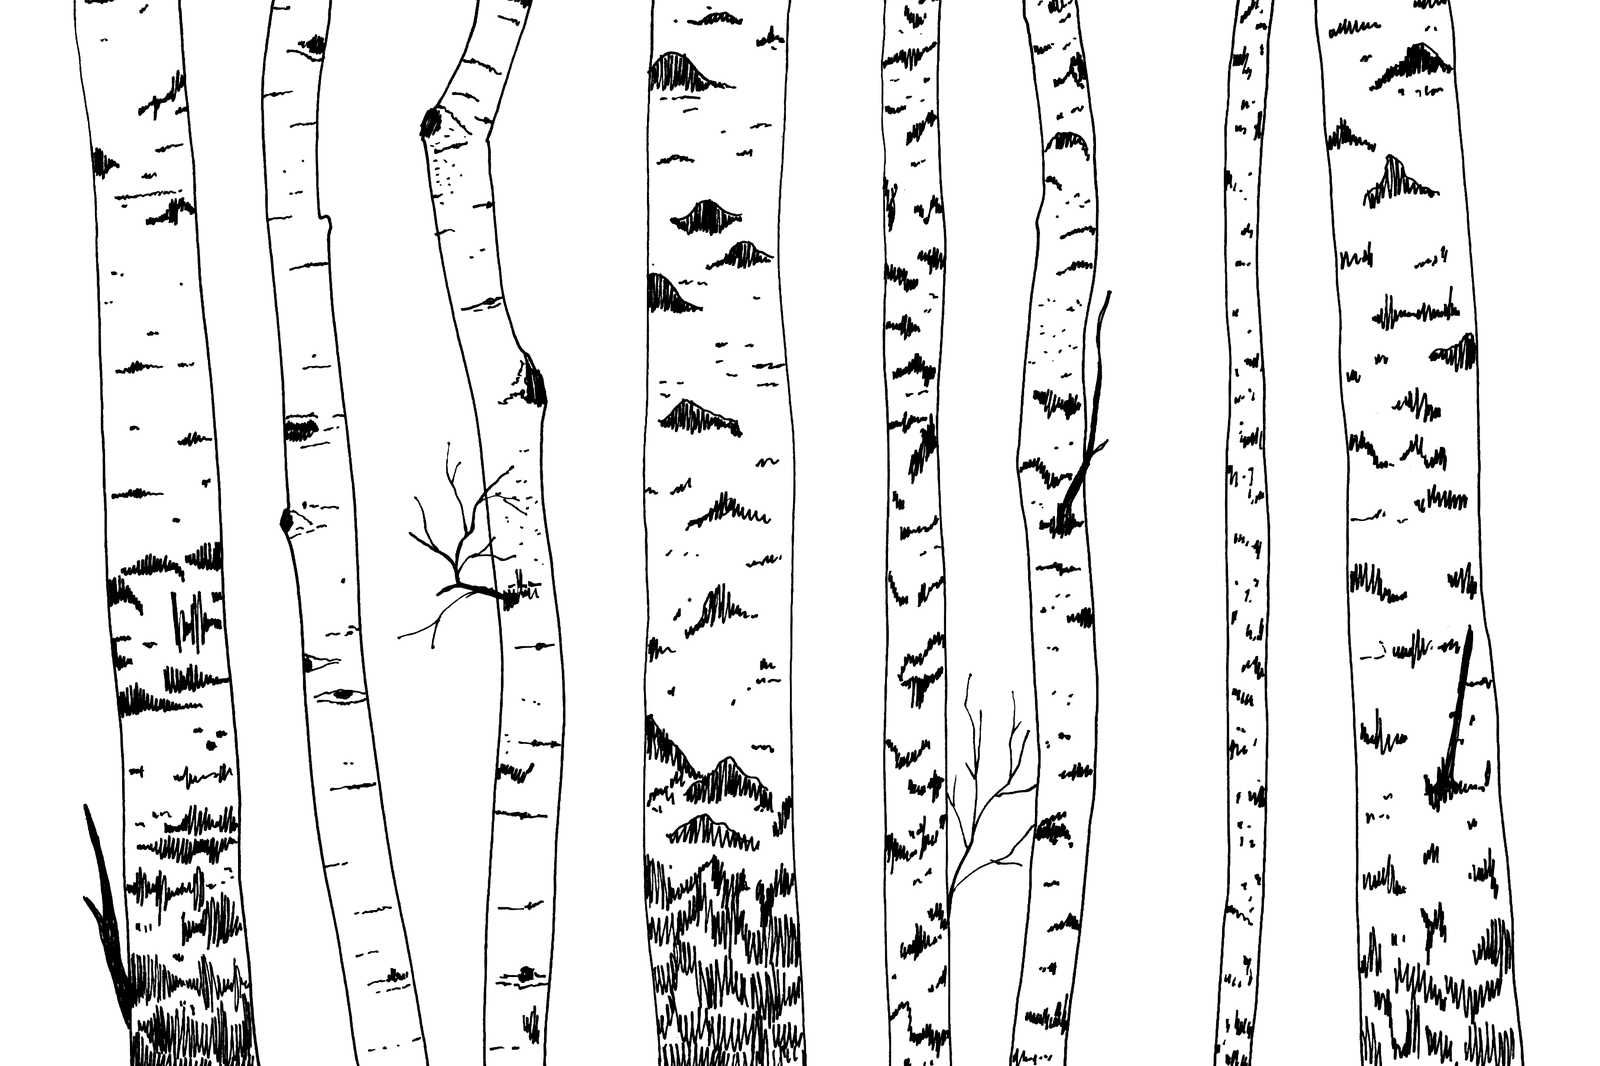             Leinwand gezeichneter Birkenwald – 120 cm x 80 cm
        